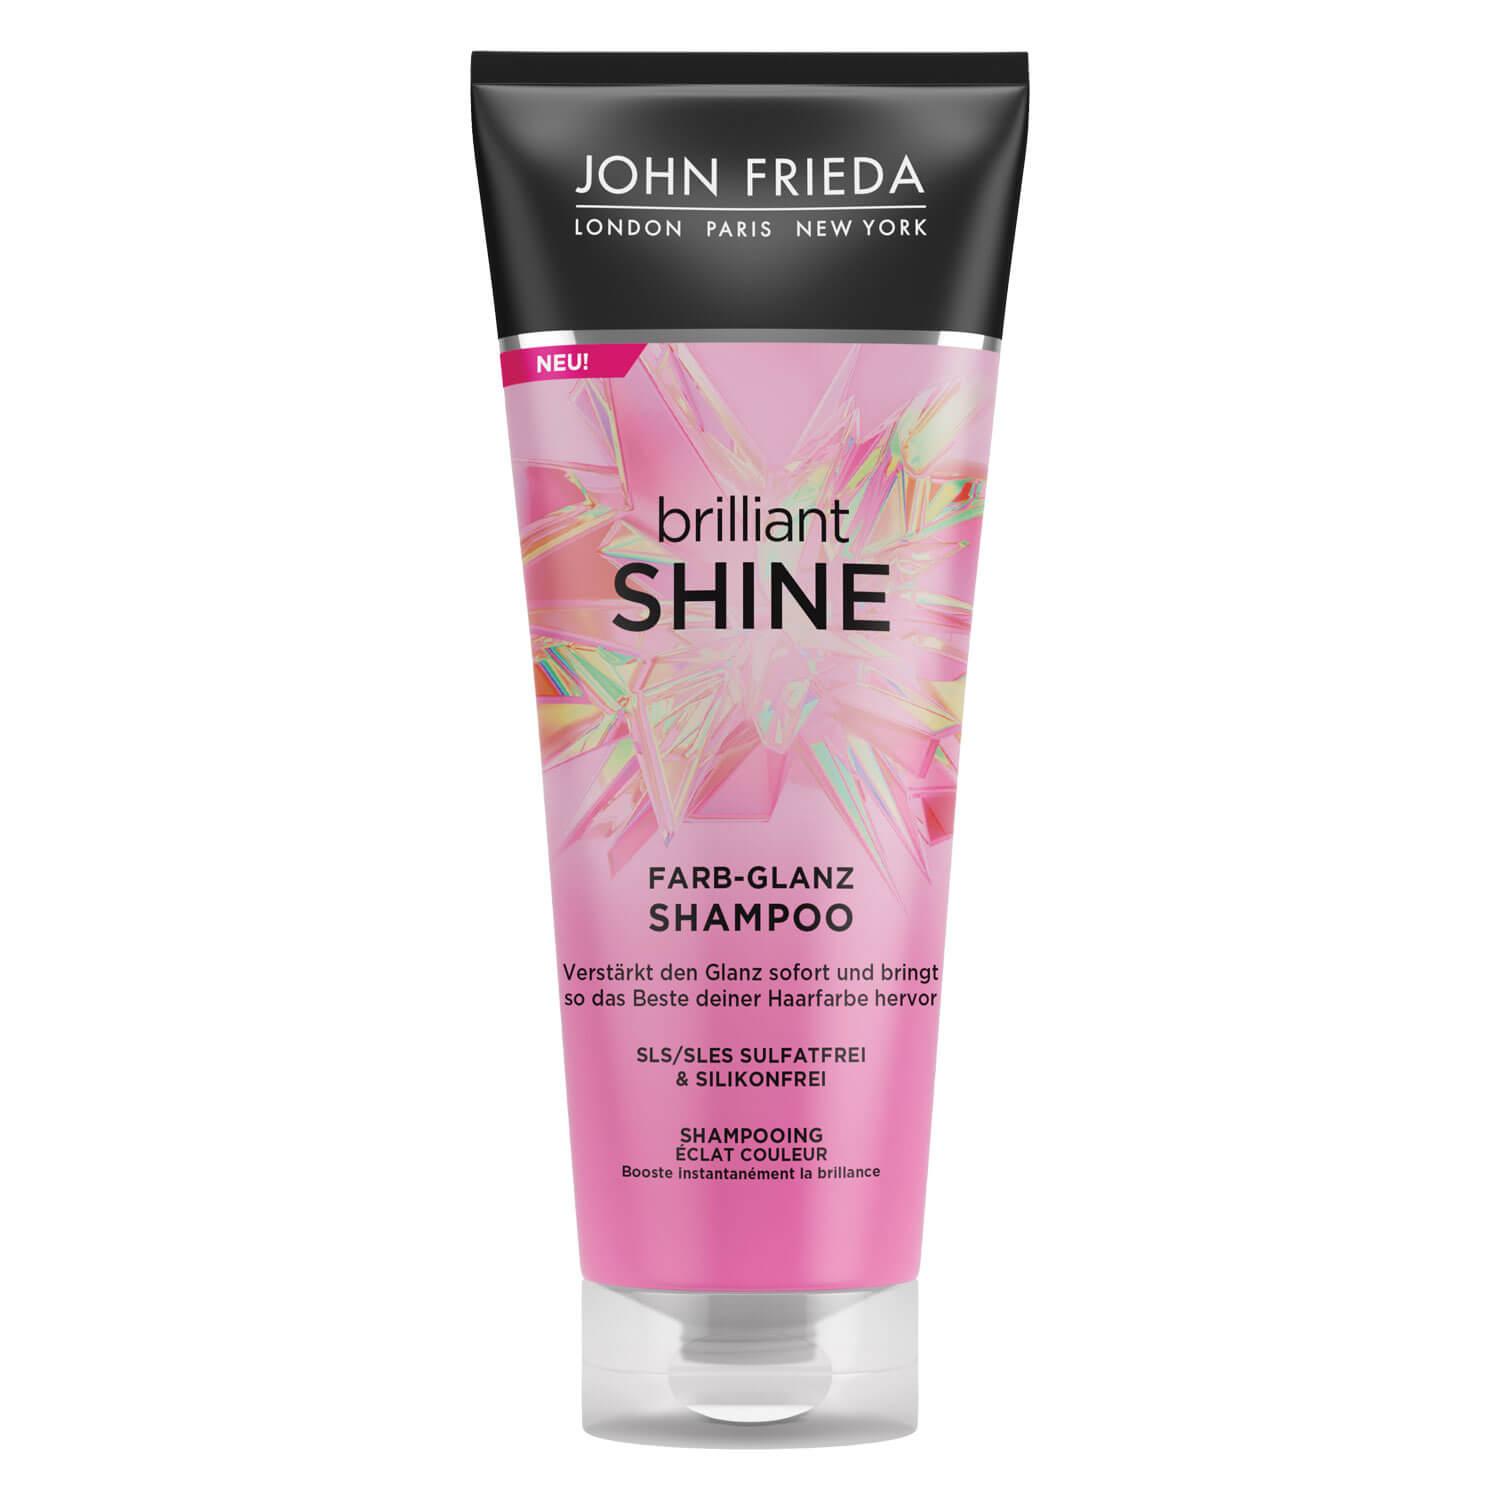 Brilliant Shine - Farb-Glanz Shampoo